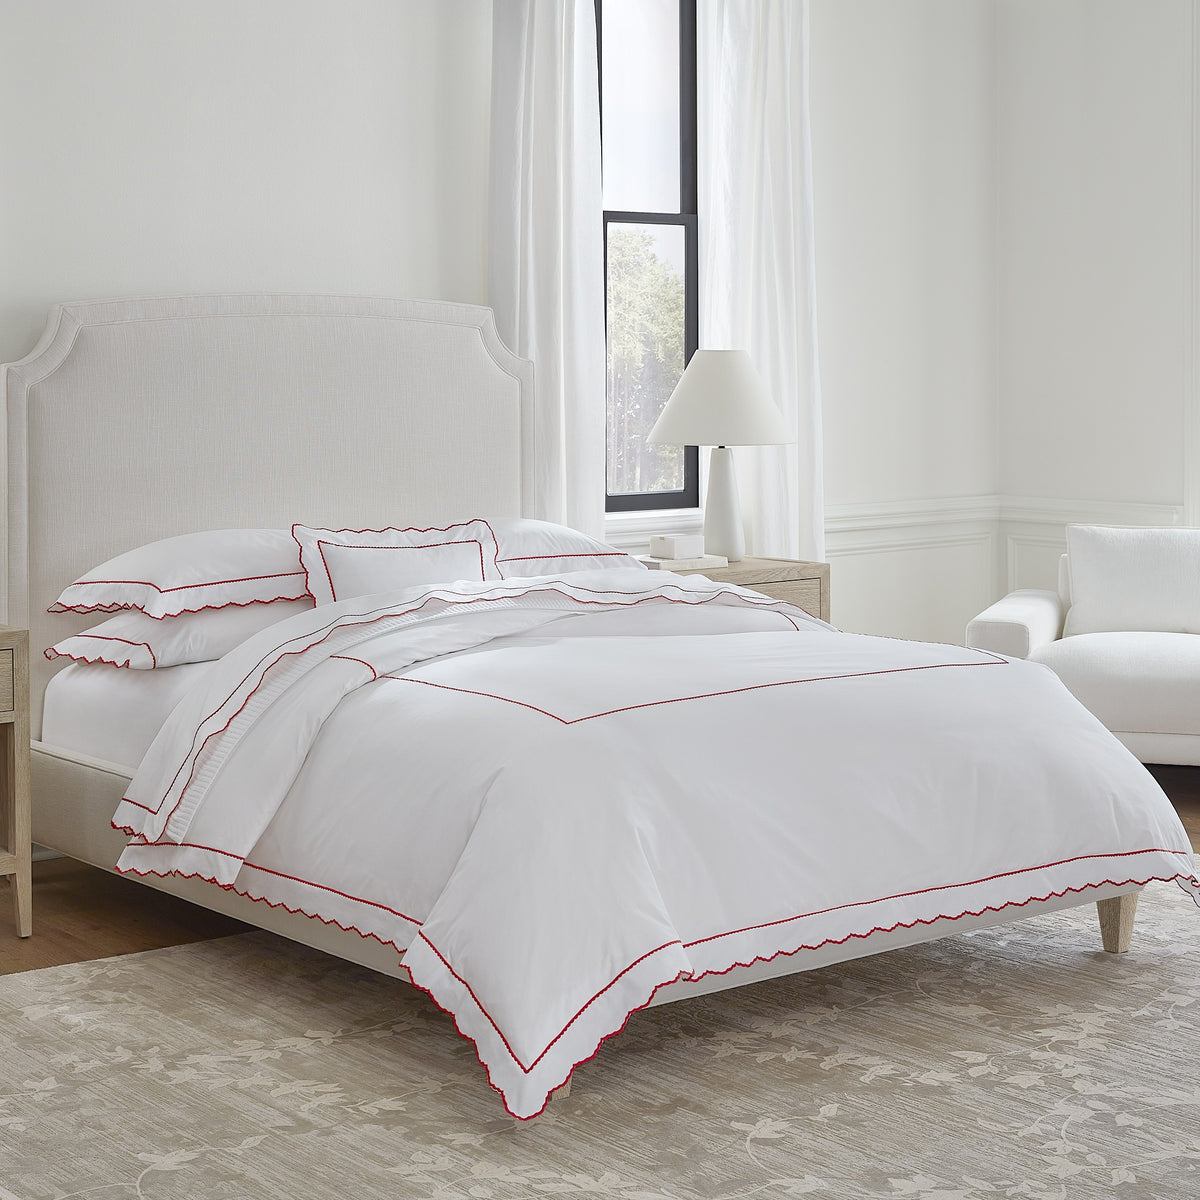 Alternative View of Sferra Pettine Bedding Collection White/Crimson